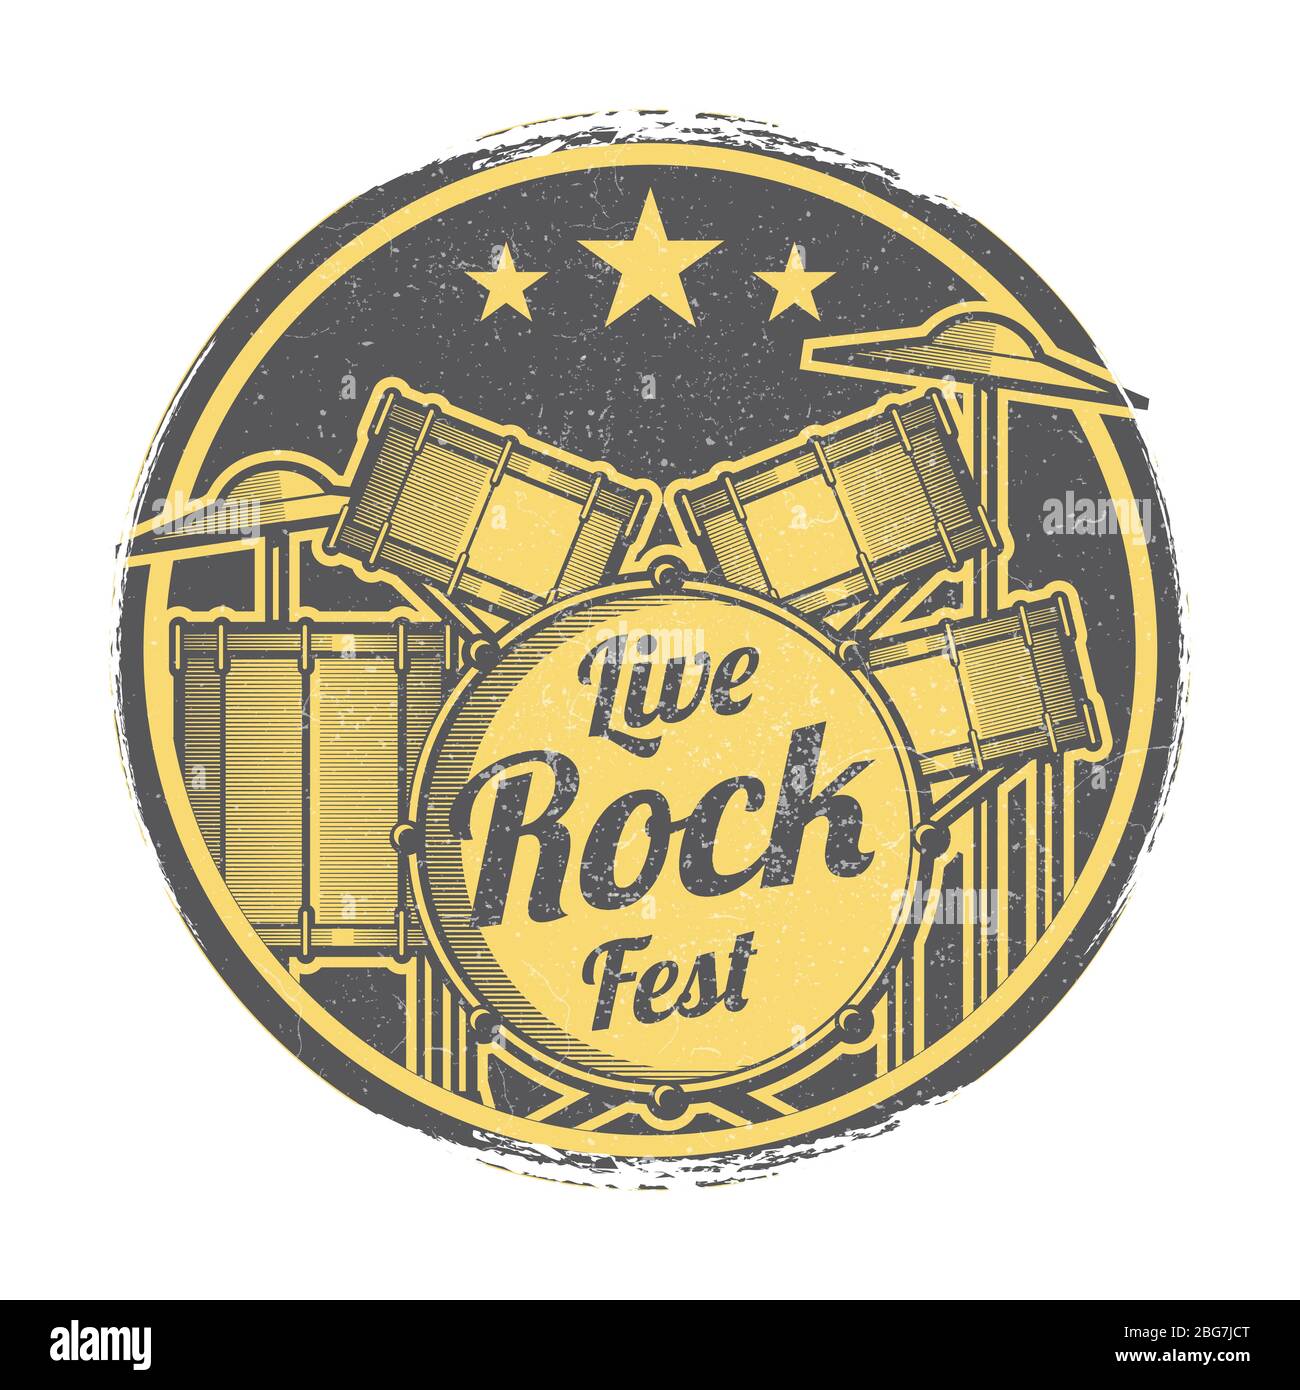 Rock festival vector grunge retro logo design illustration isolated on white Stock Vector